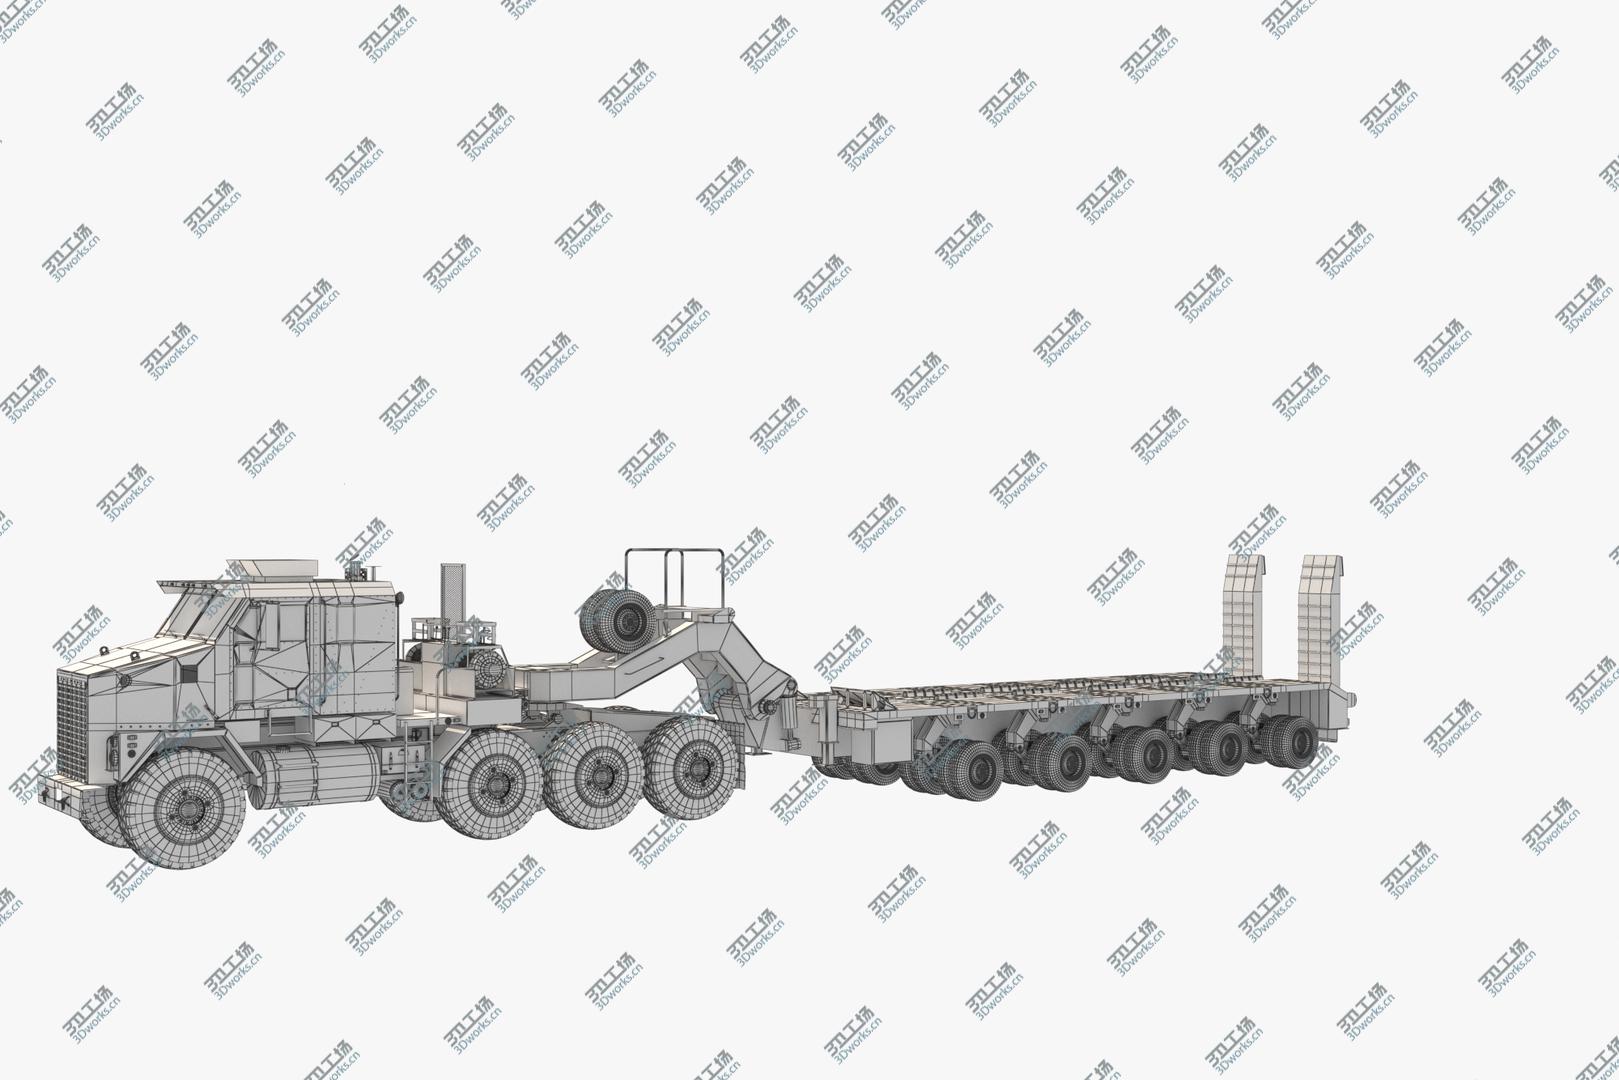 images/goods_img/20210319/Oshkosh M1070 Truck M1000 3D model/3.jpg